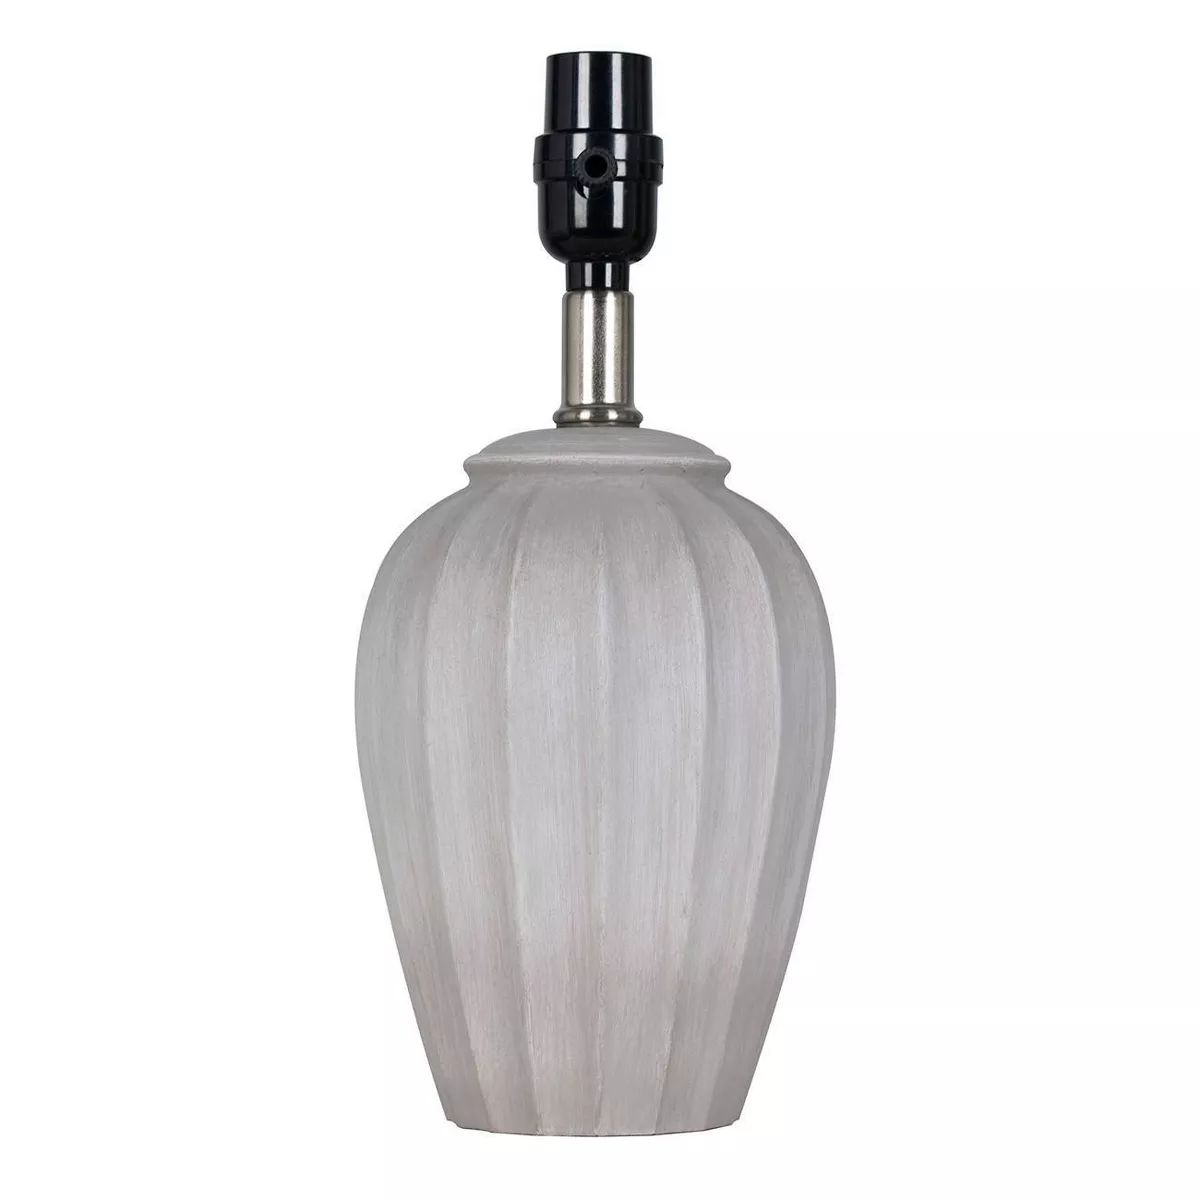 Small Ribbed Wood Lamp Base Brown - Threshold™ | Target